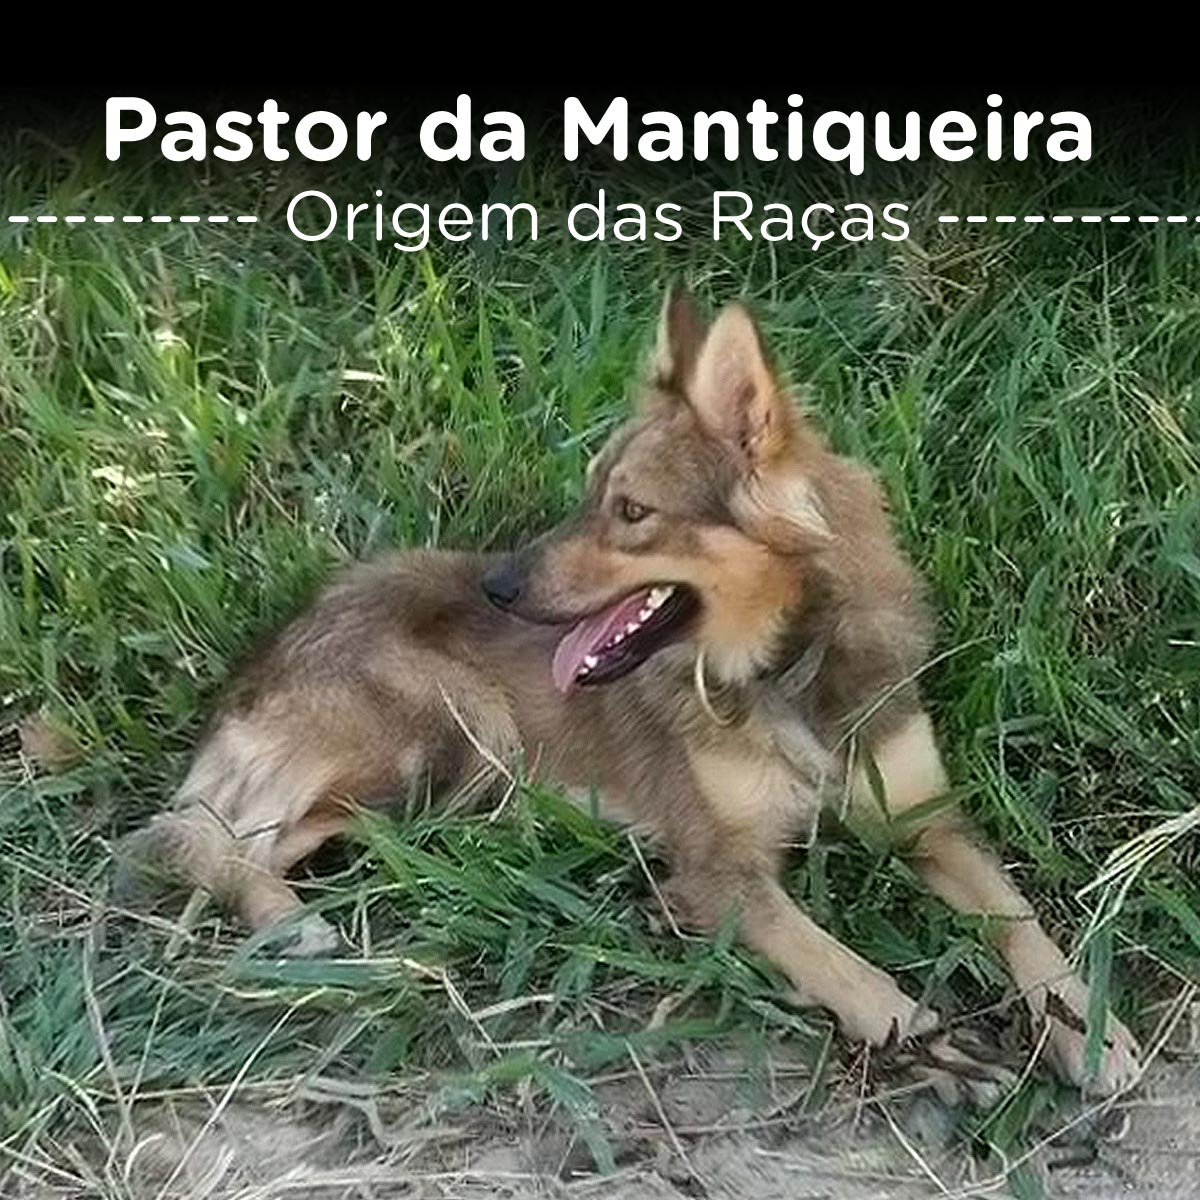 Pastor da Mantiqueira